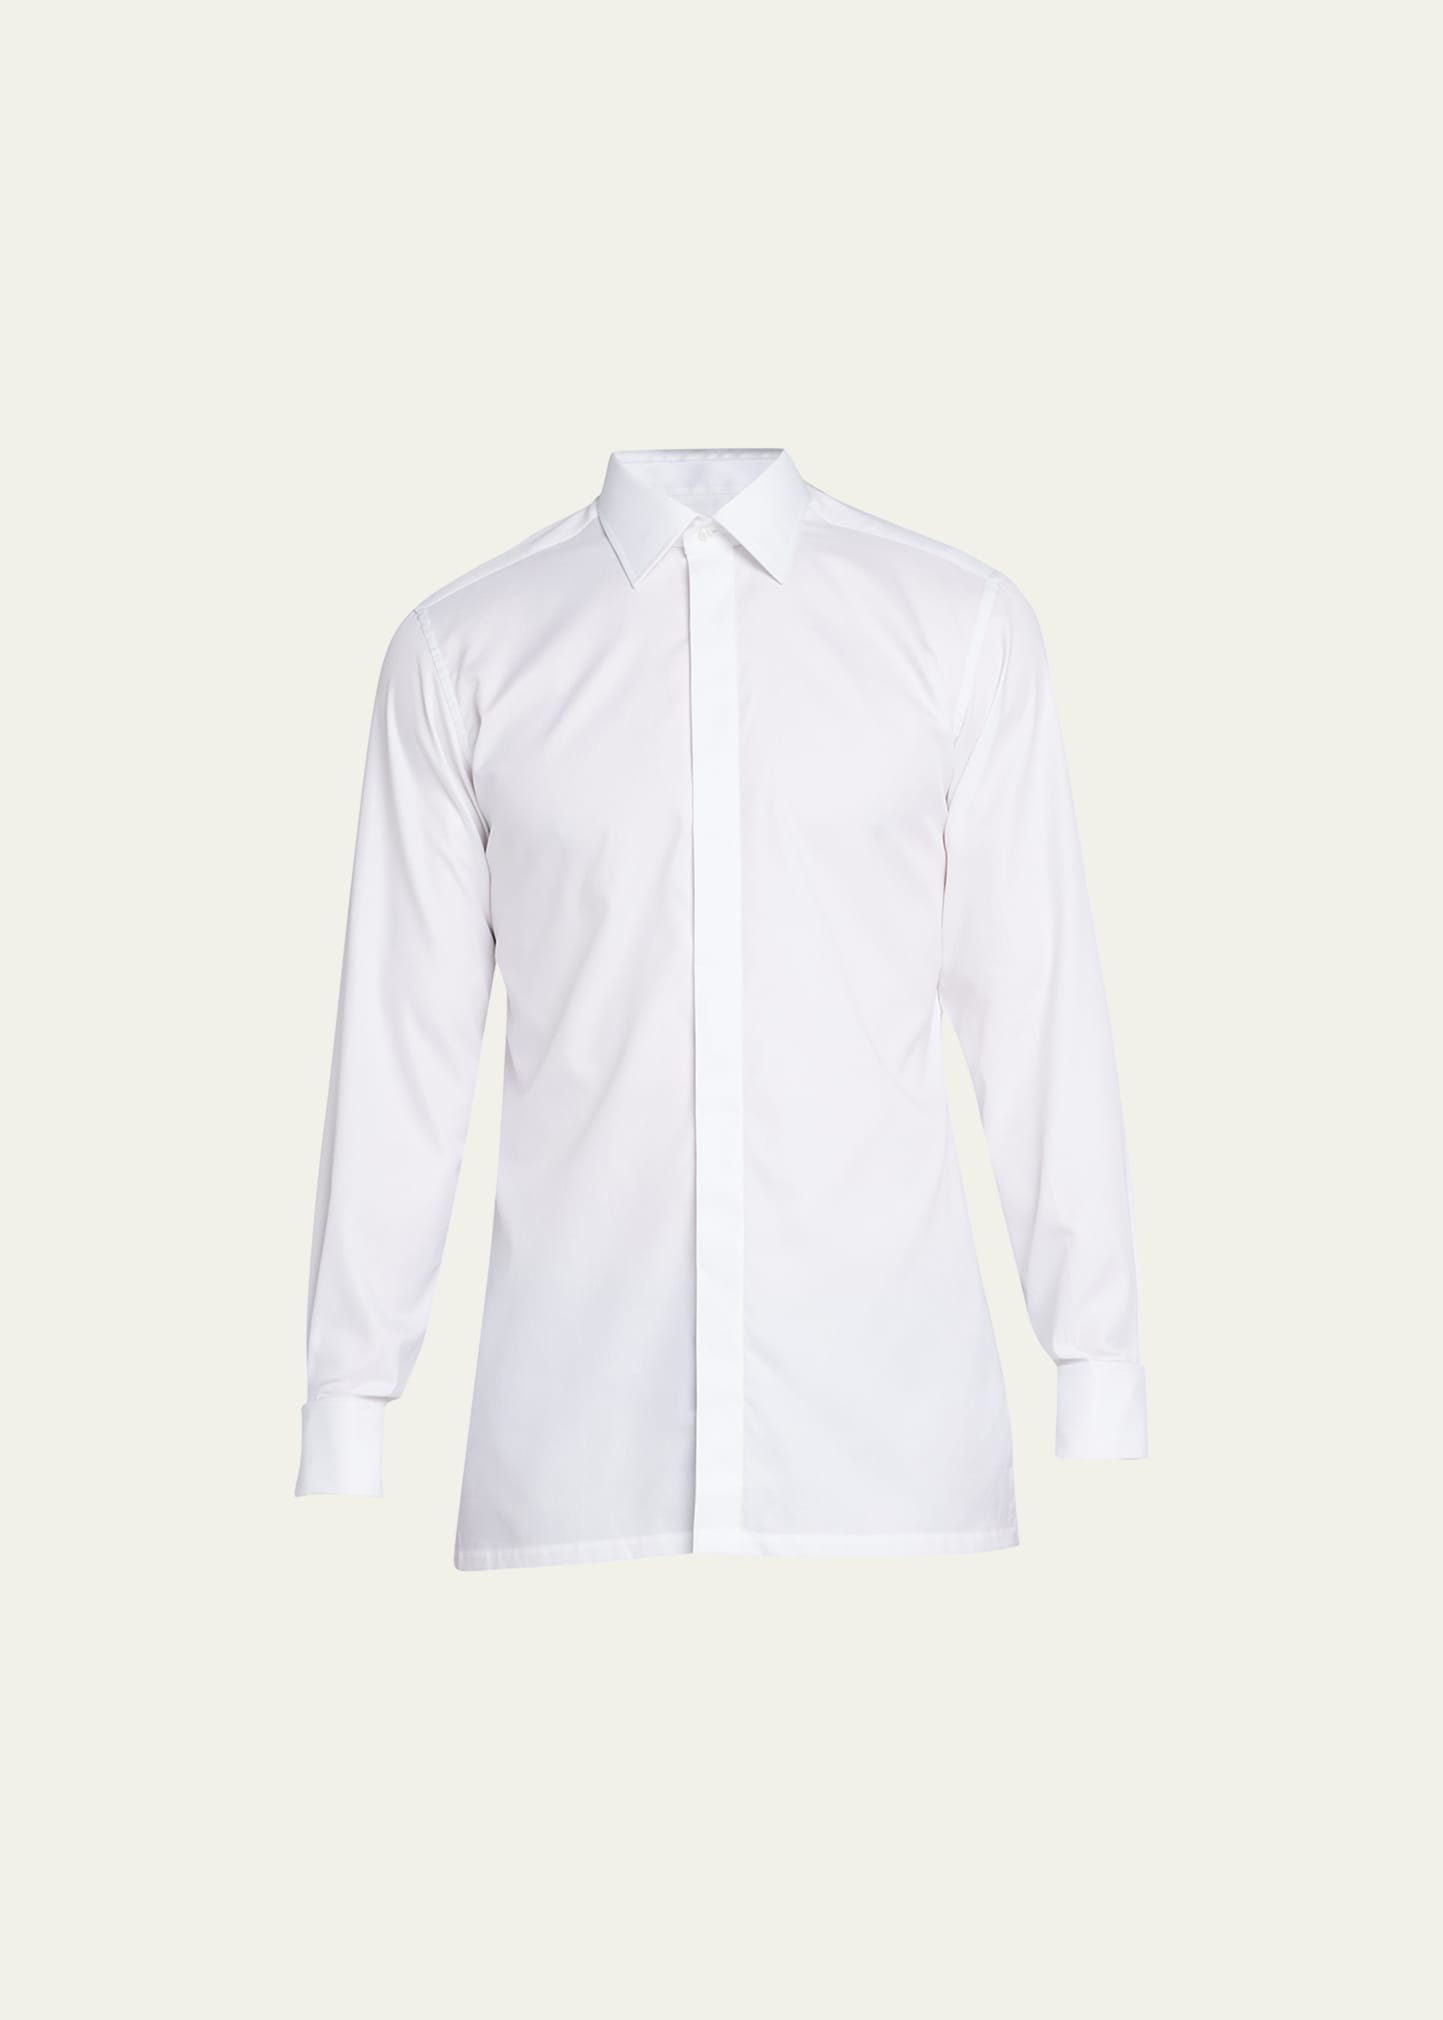 Charvet Men's Slim Fit Covered Placket Dress Shirt In White